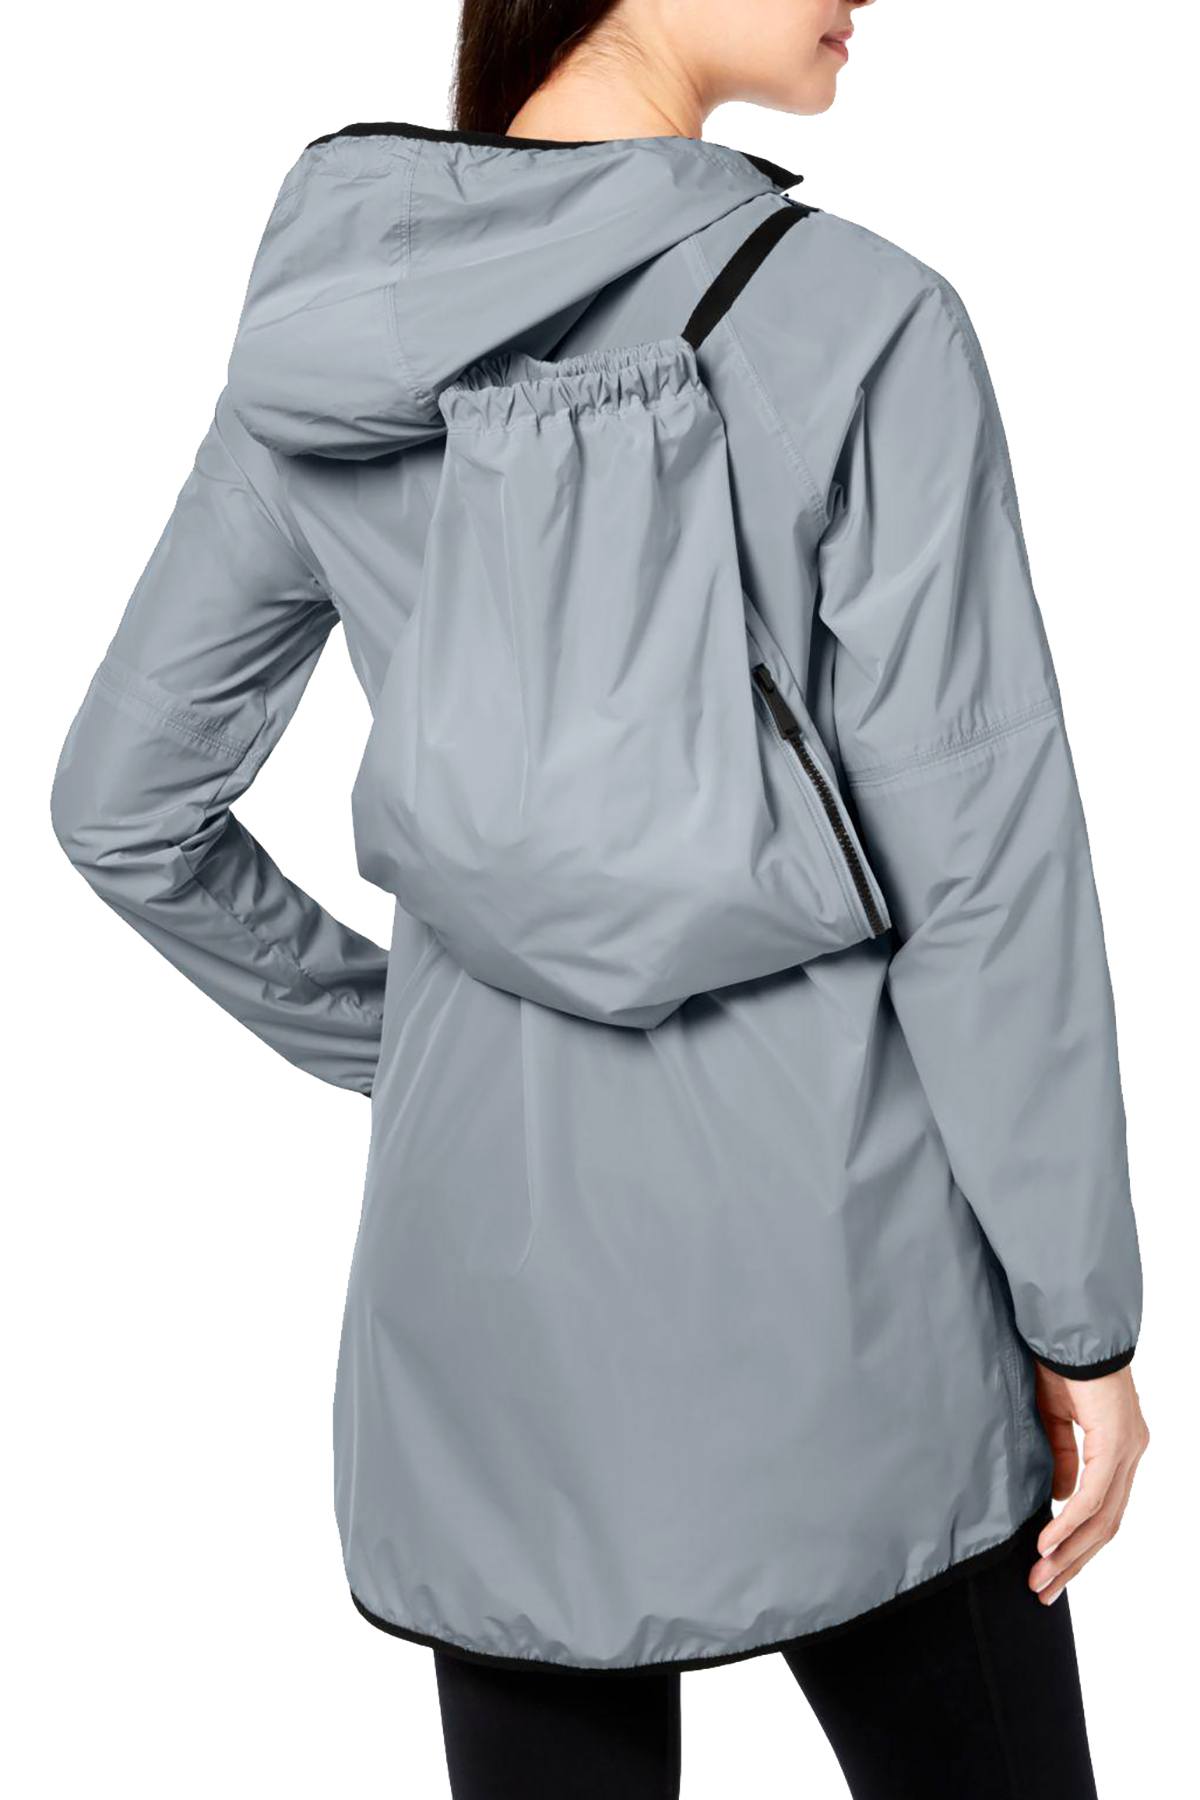 Calvin Klein Performance Steel Packable Hooded Jacket